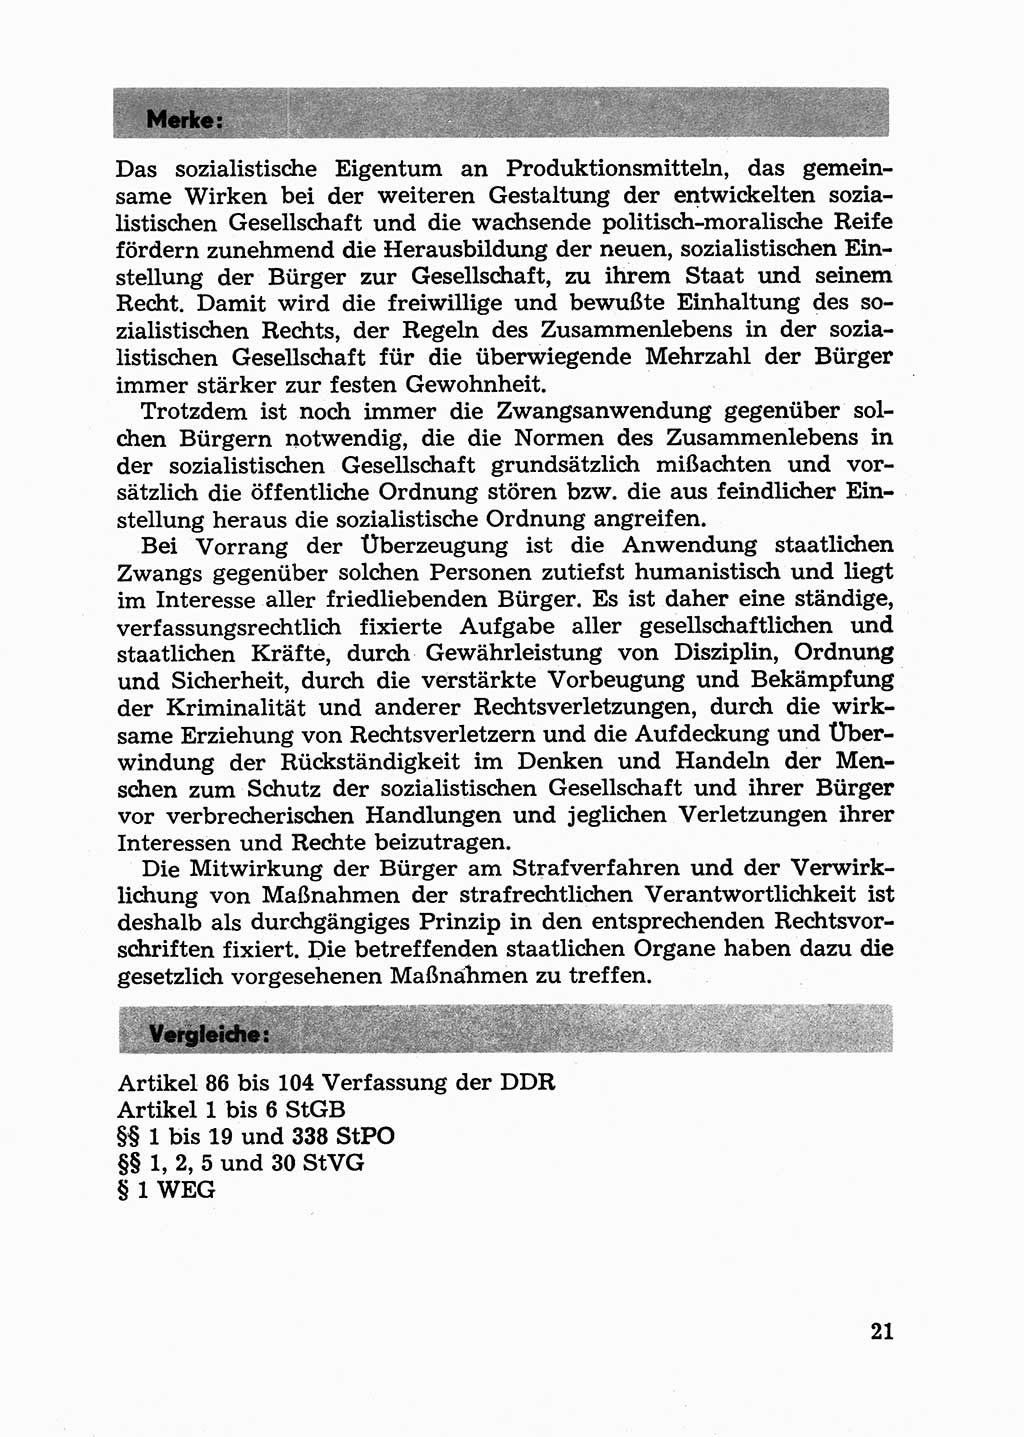 Handbuch für Betriebsangehörige, Abteilung Strafvollzug (SV) [Ministerium des Innern (MdI) Deutsche Demokratische Republik (DDR)] 1981, Seite 21 (Hb. BA Abt. SV MdI DDR 1981, S. 21)